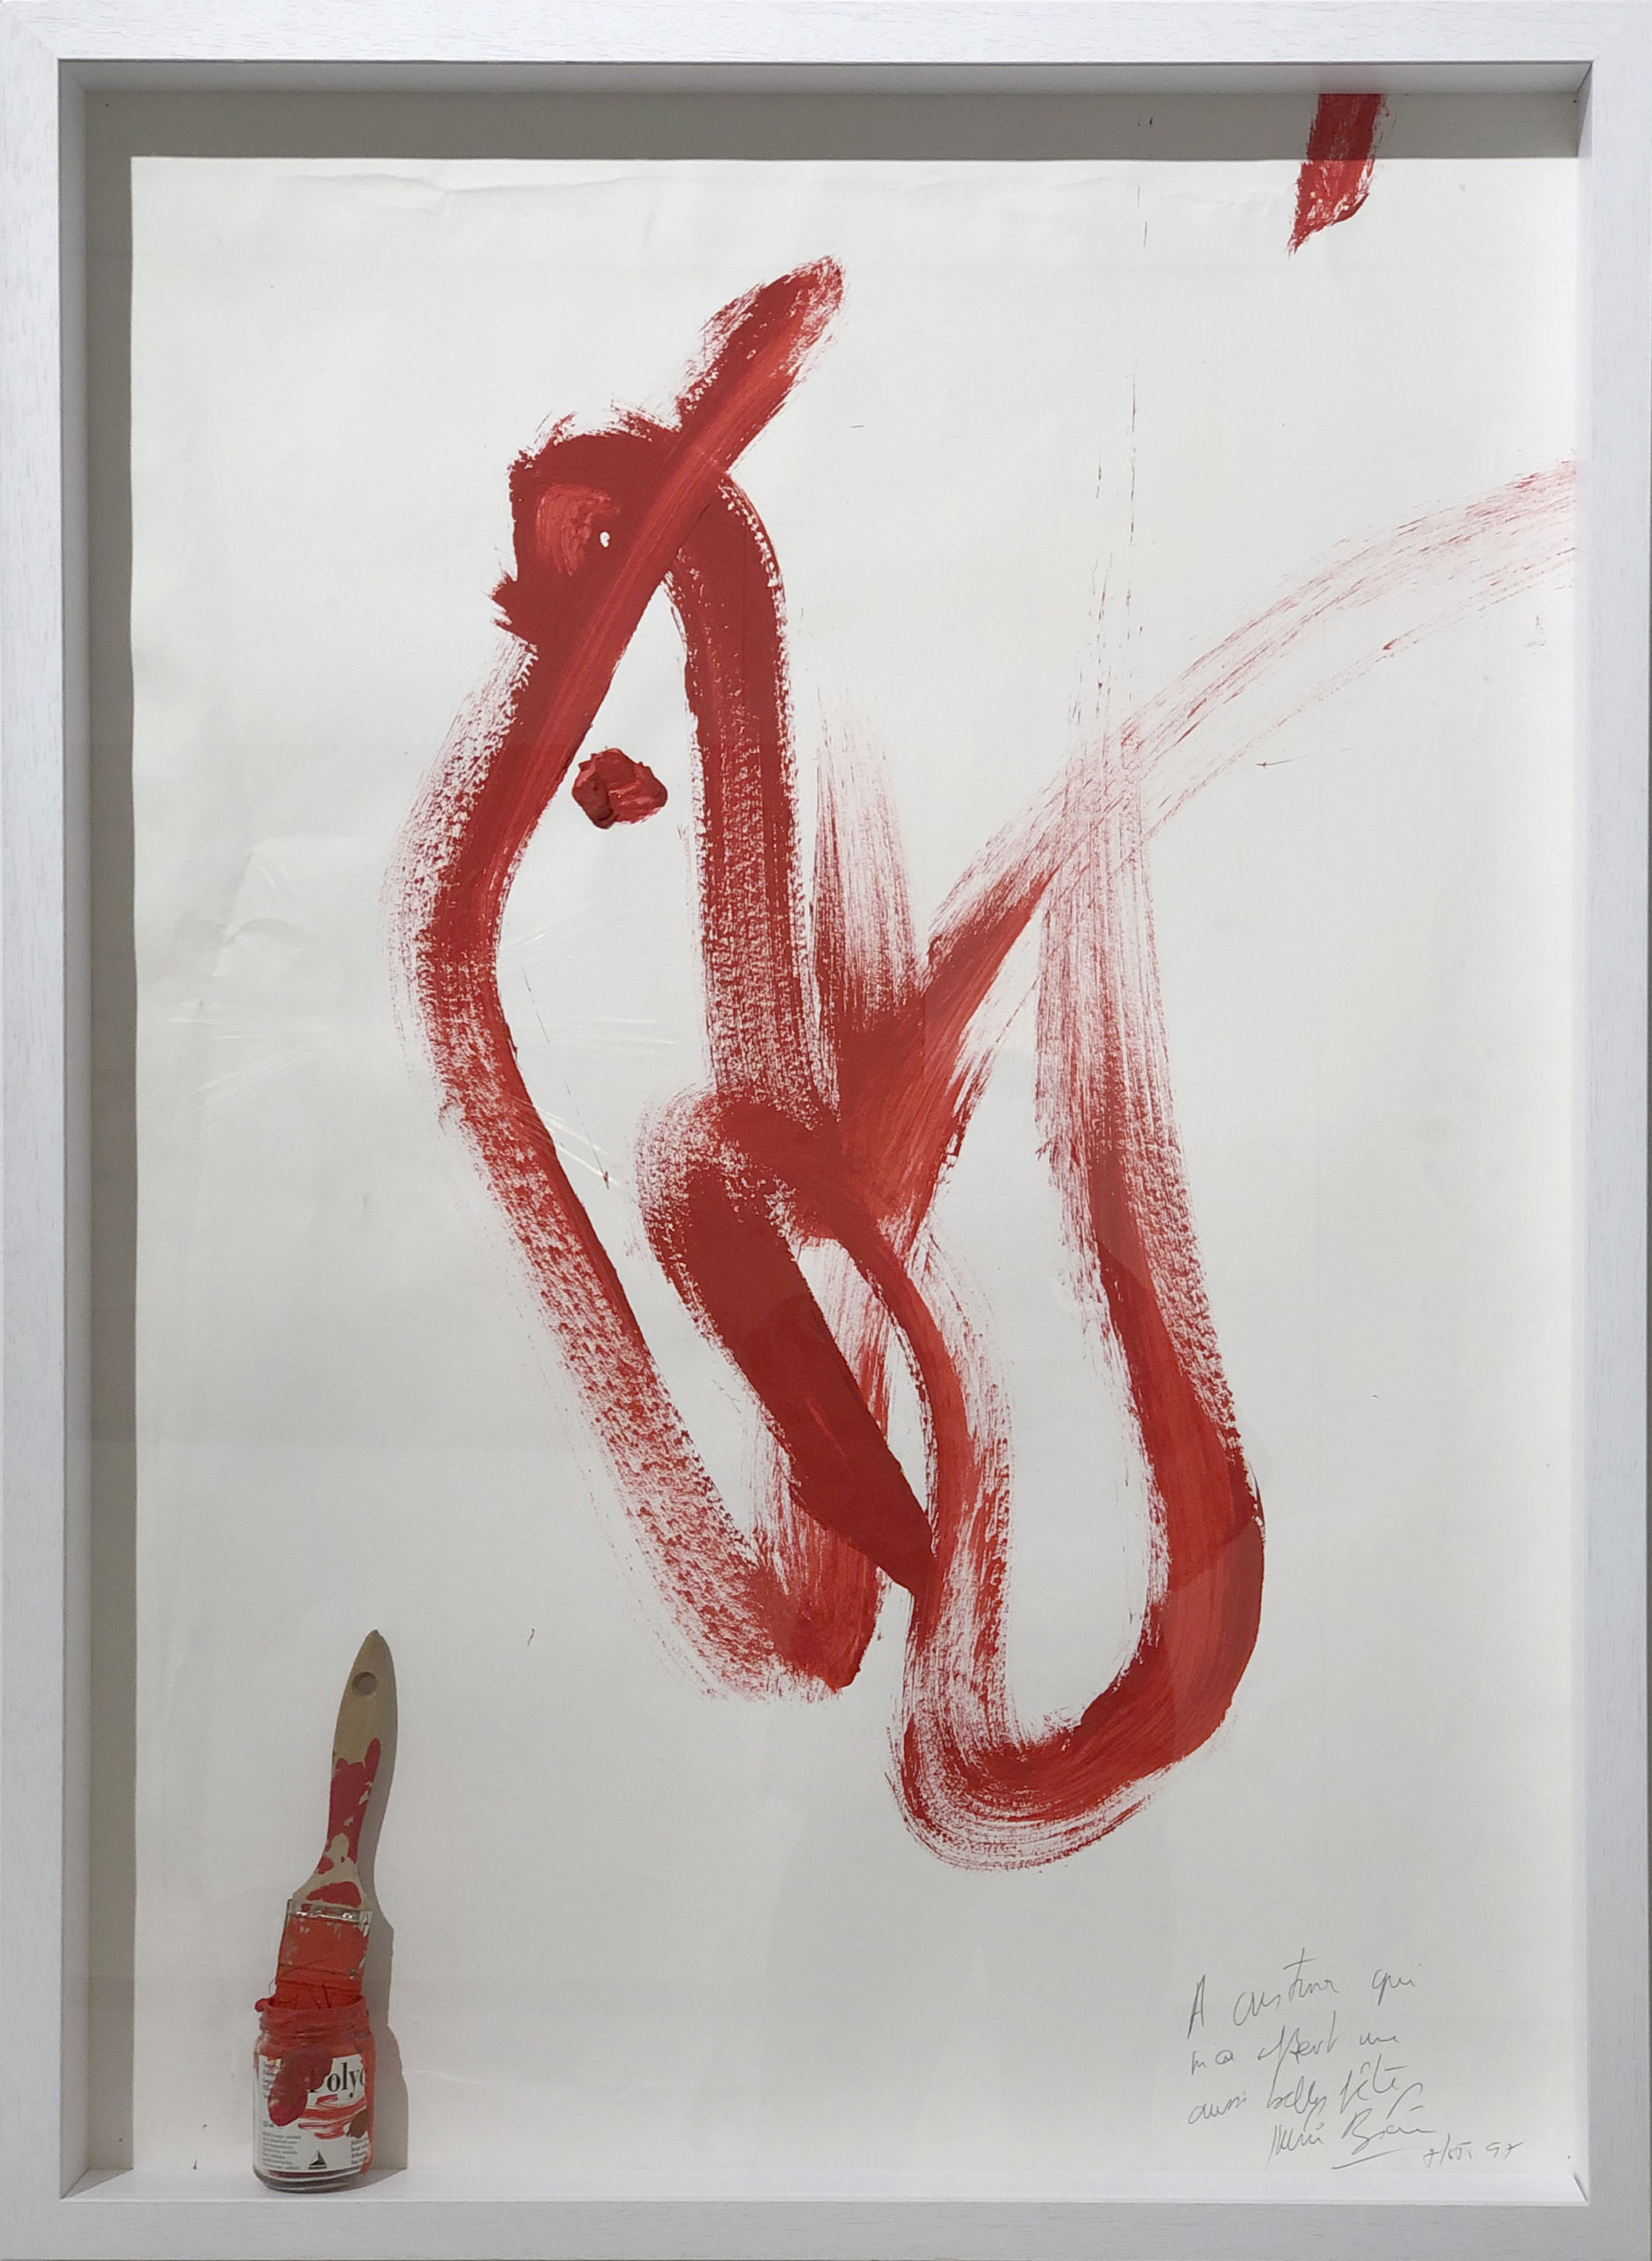 J. Blaine, CH'I, 1995, acrilico su carta + pennarello, 72 x 101 cm